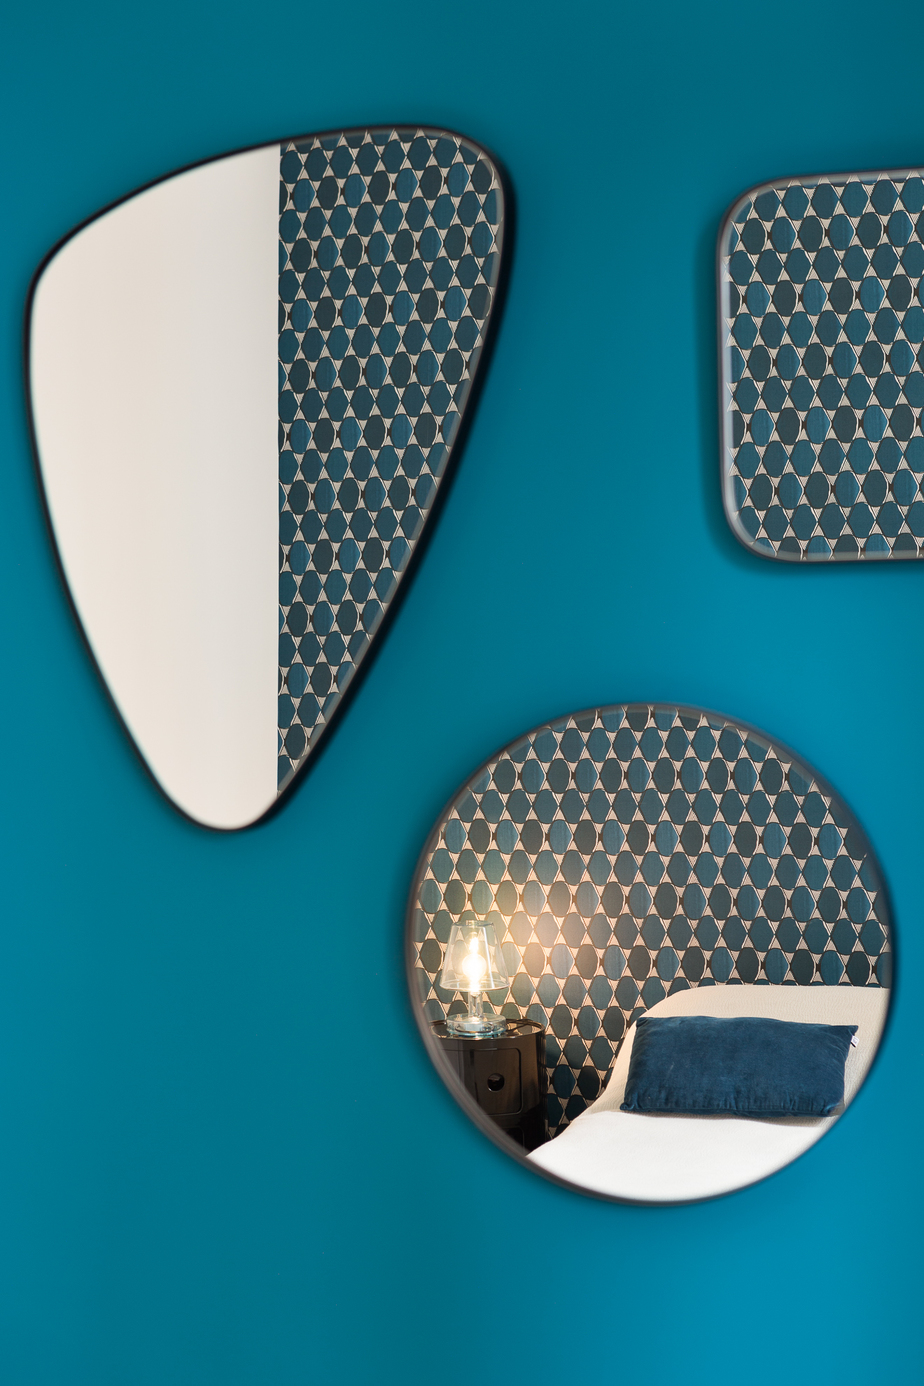 Photographie appartement Rennes : chambre parentale en bleu Sarah Lavoine, avec jeu de mirori reflètant le lit et le papier-peint Sarah Lavoine en nuance de bleu placé en tête de lit